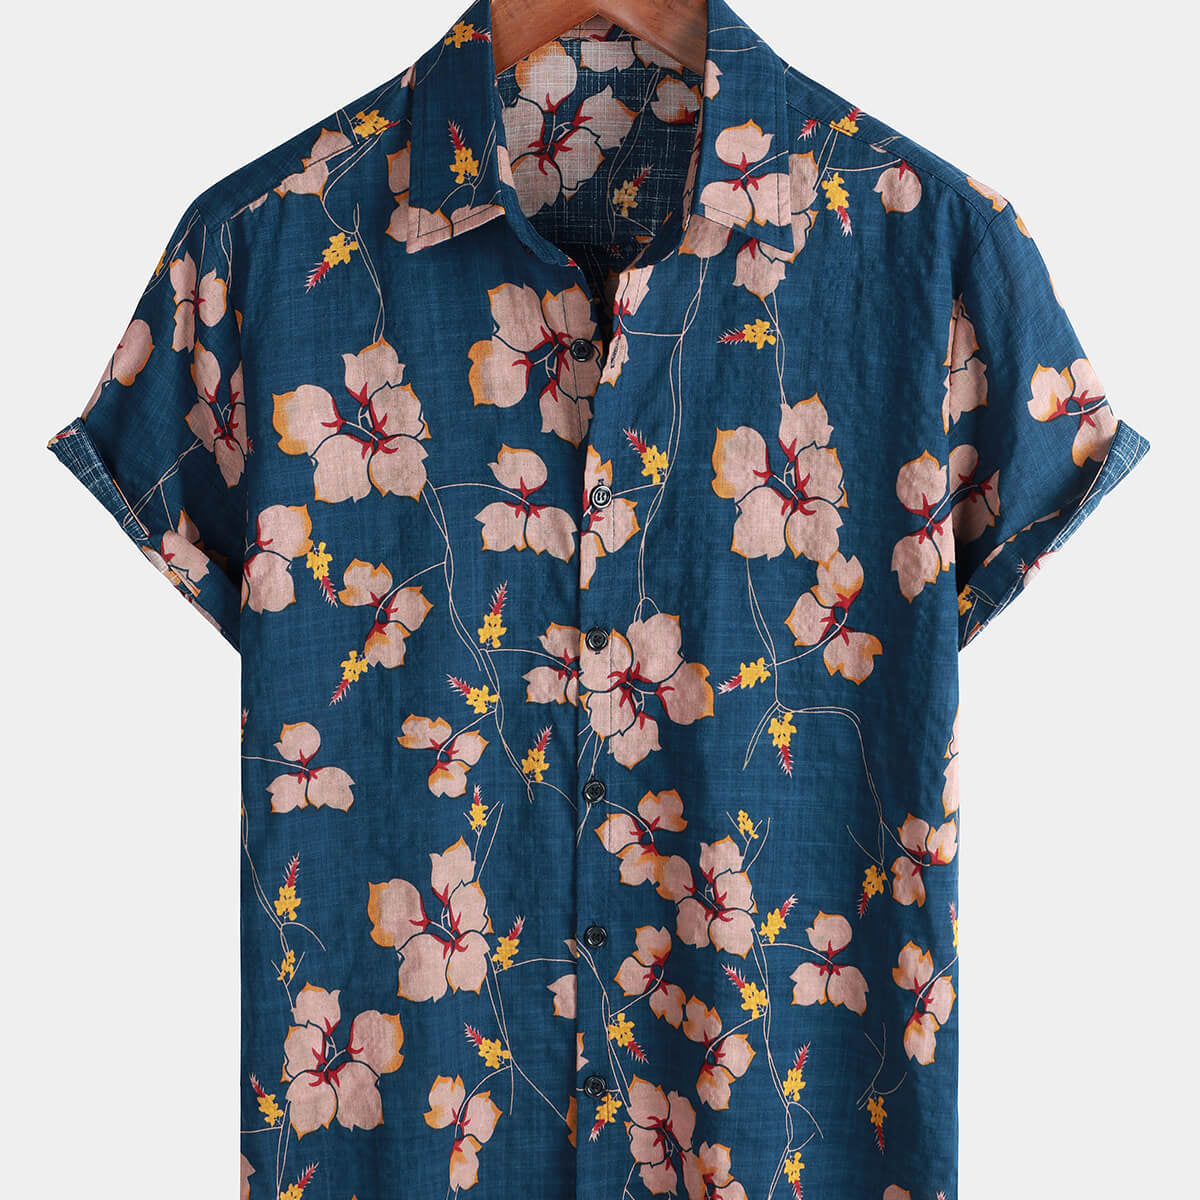 Men's Floral Button Up Cotton Summer Beach Hawaiian Shirt